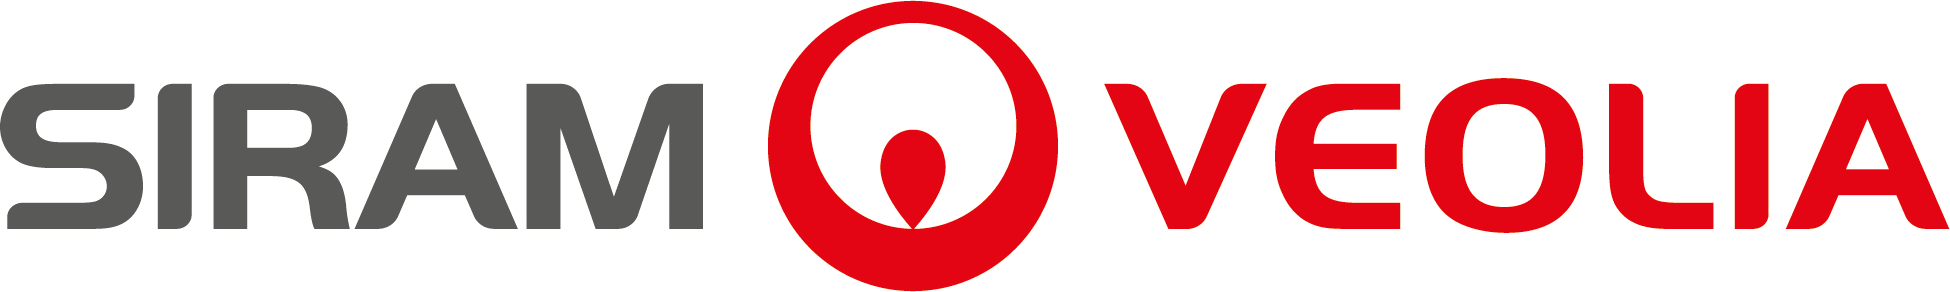 Siram veolia logo